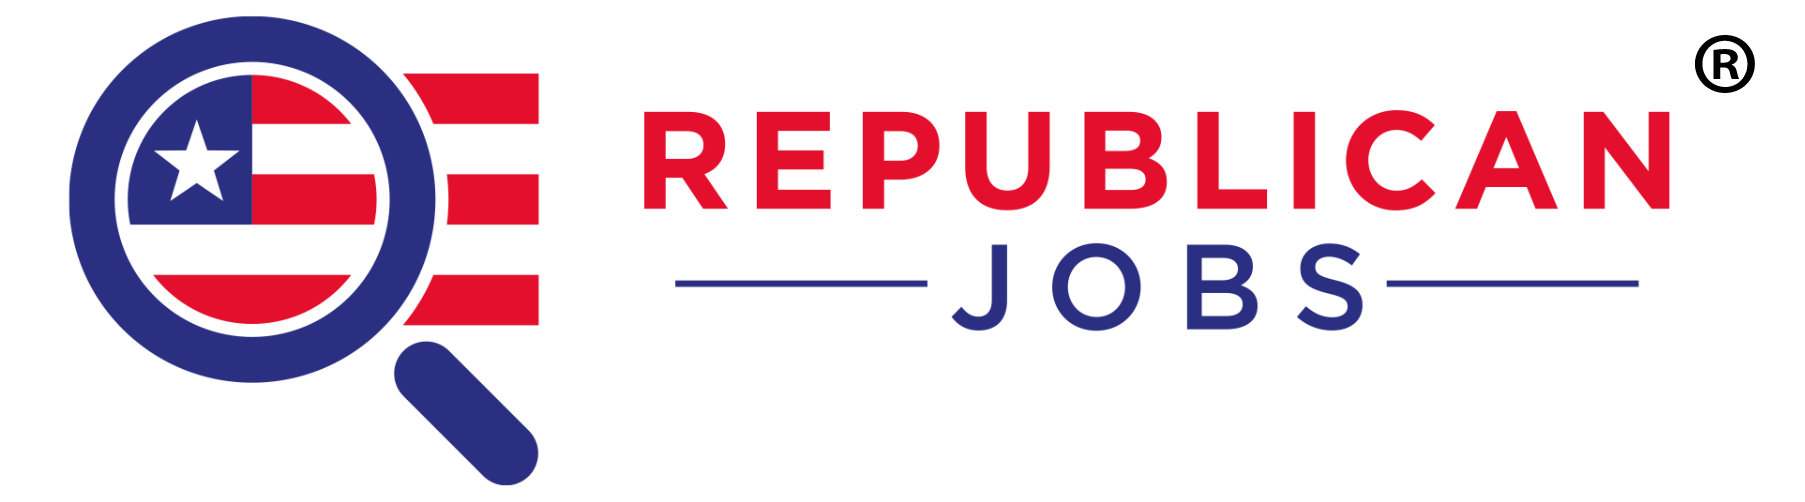 Republican Jobs Logo